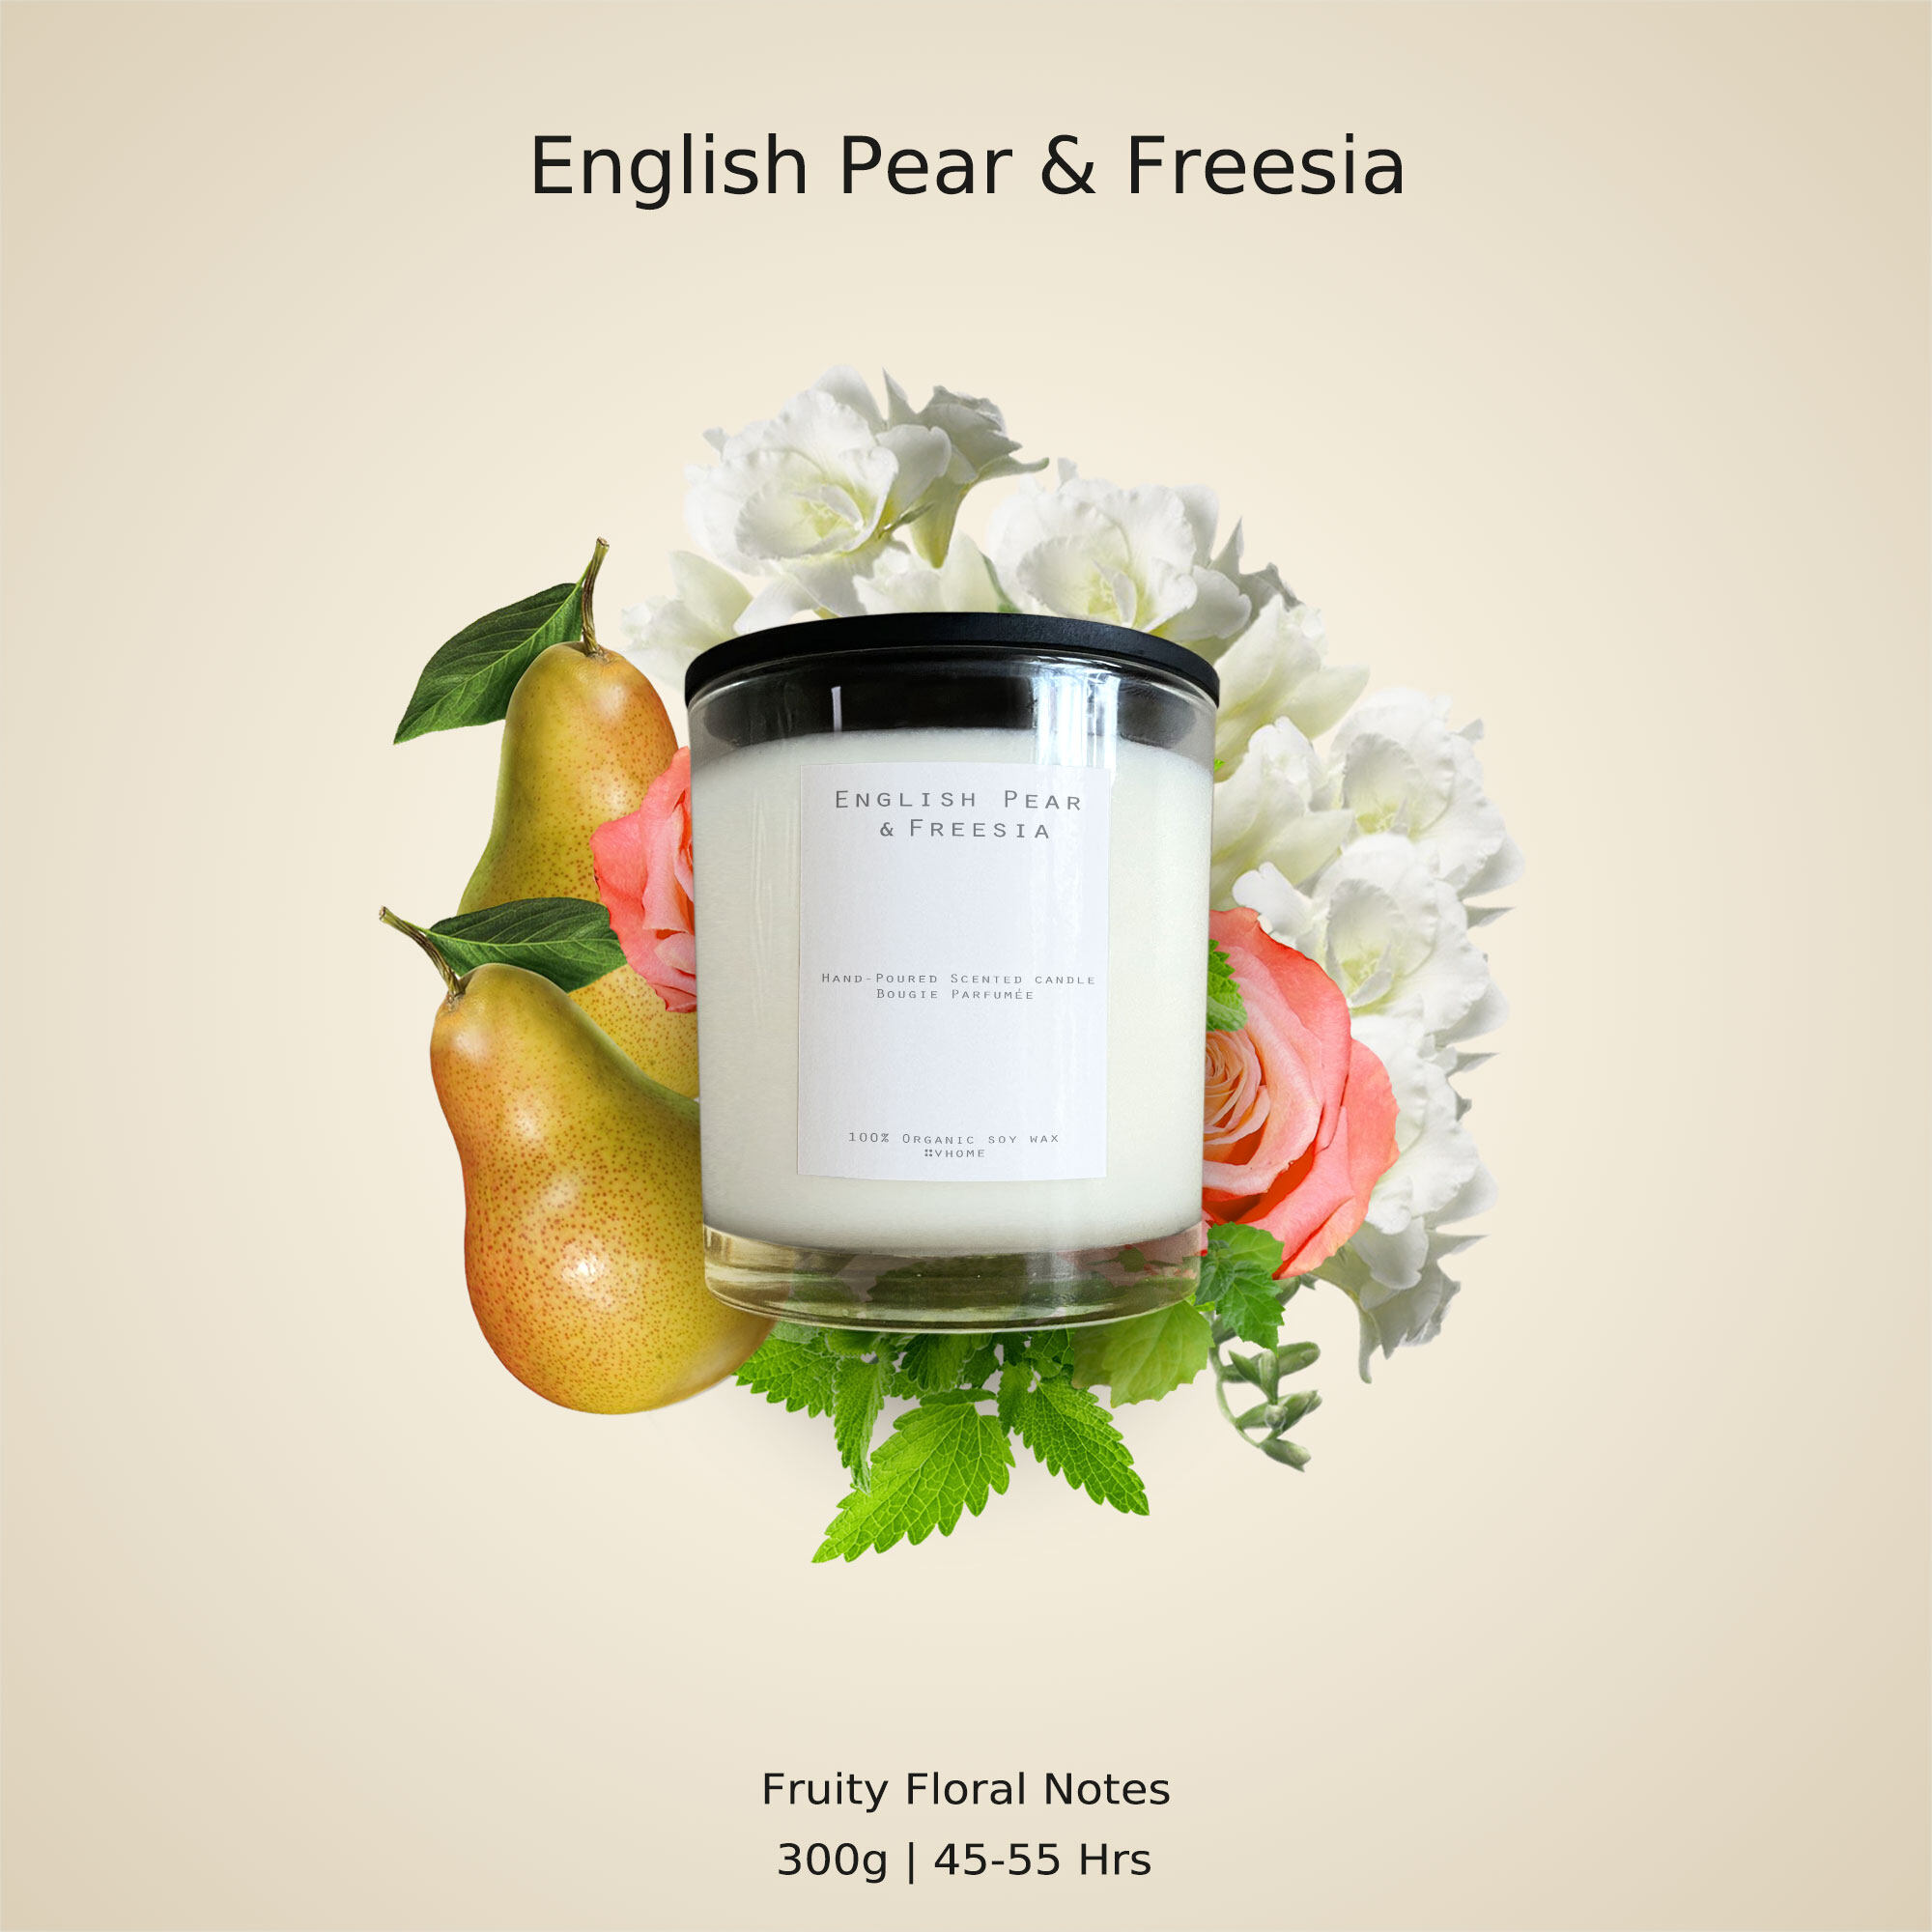 เทียนหอม กลิ่น Jo.L English Pear & Freesia 300g / 10.14 oz (พร้อมฝาปิด ทำเป็นที่รองเทียนได้) Double wicks candle (candle cap included)